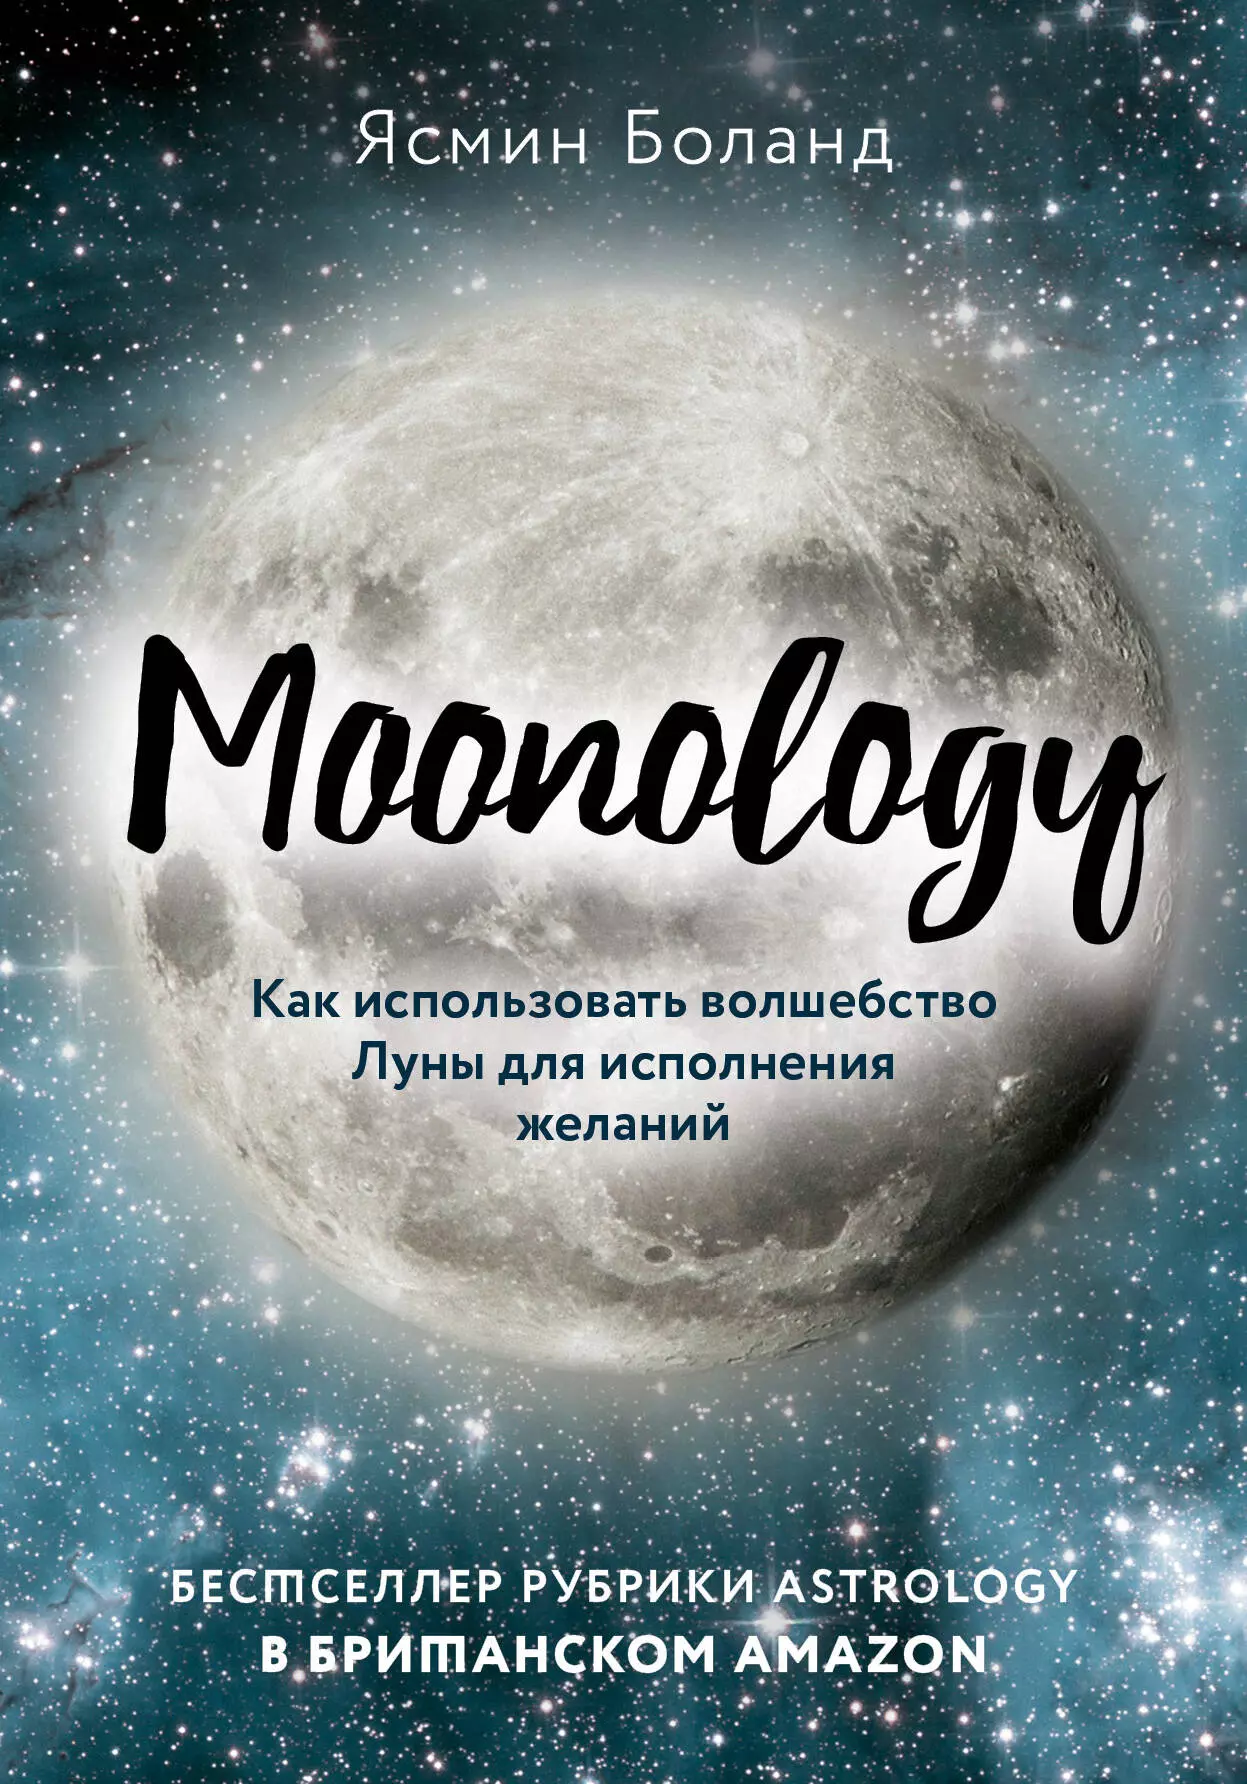 Боланд Ясмин - Moonology: Как использовать волшебство Луны для исполнения желаний